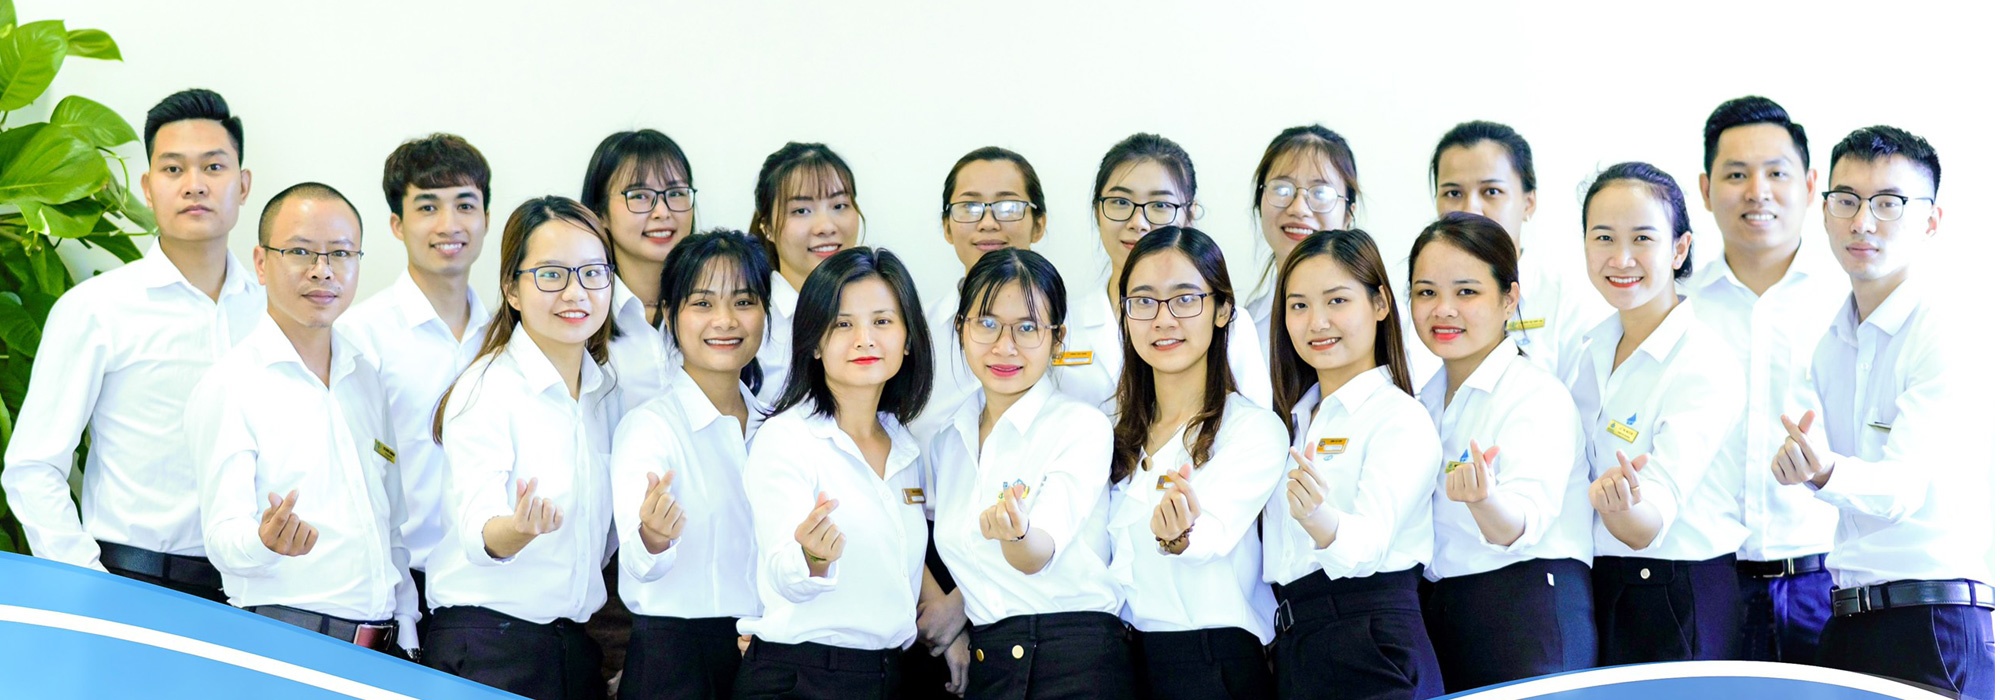 Tự hào là một trong những Tổ chức thẩm định giá hàng đầu Việt Nam